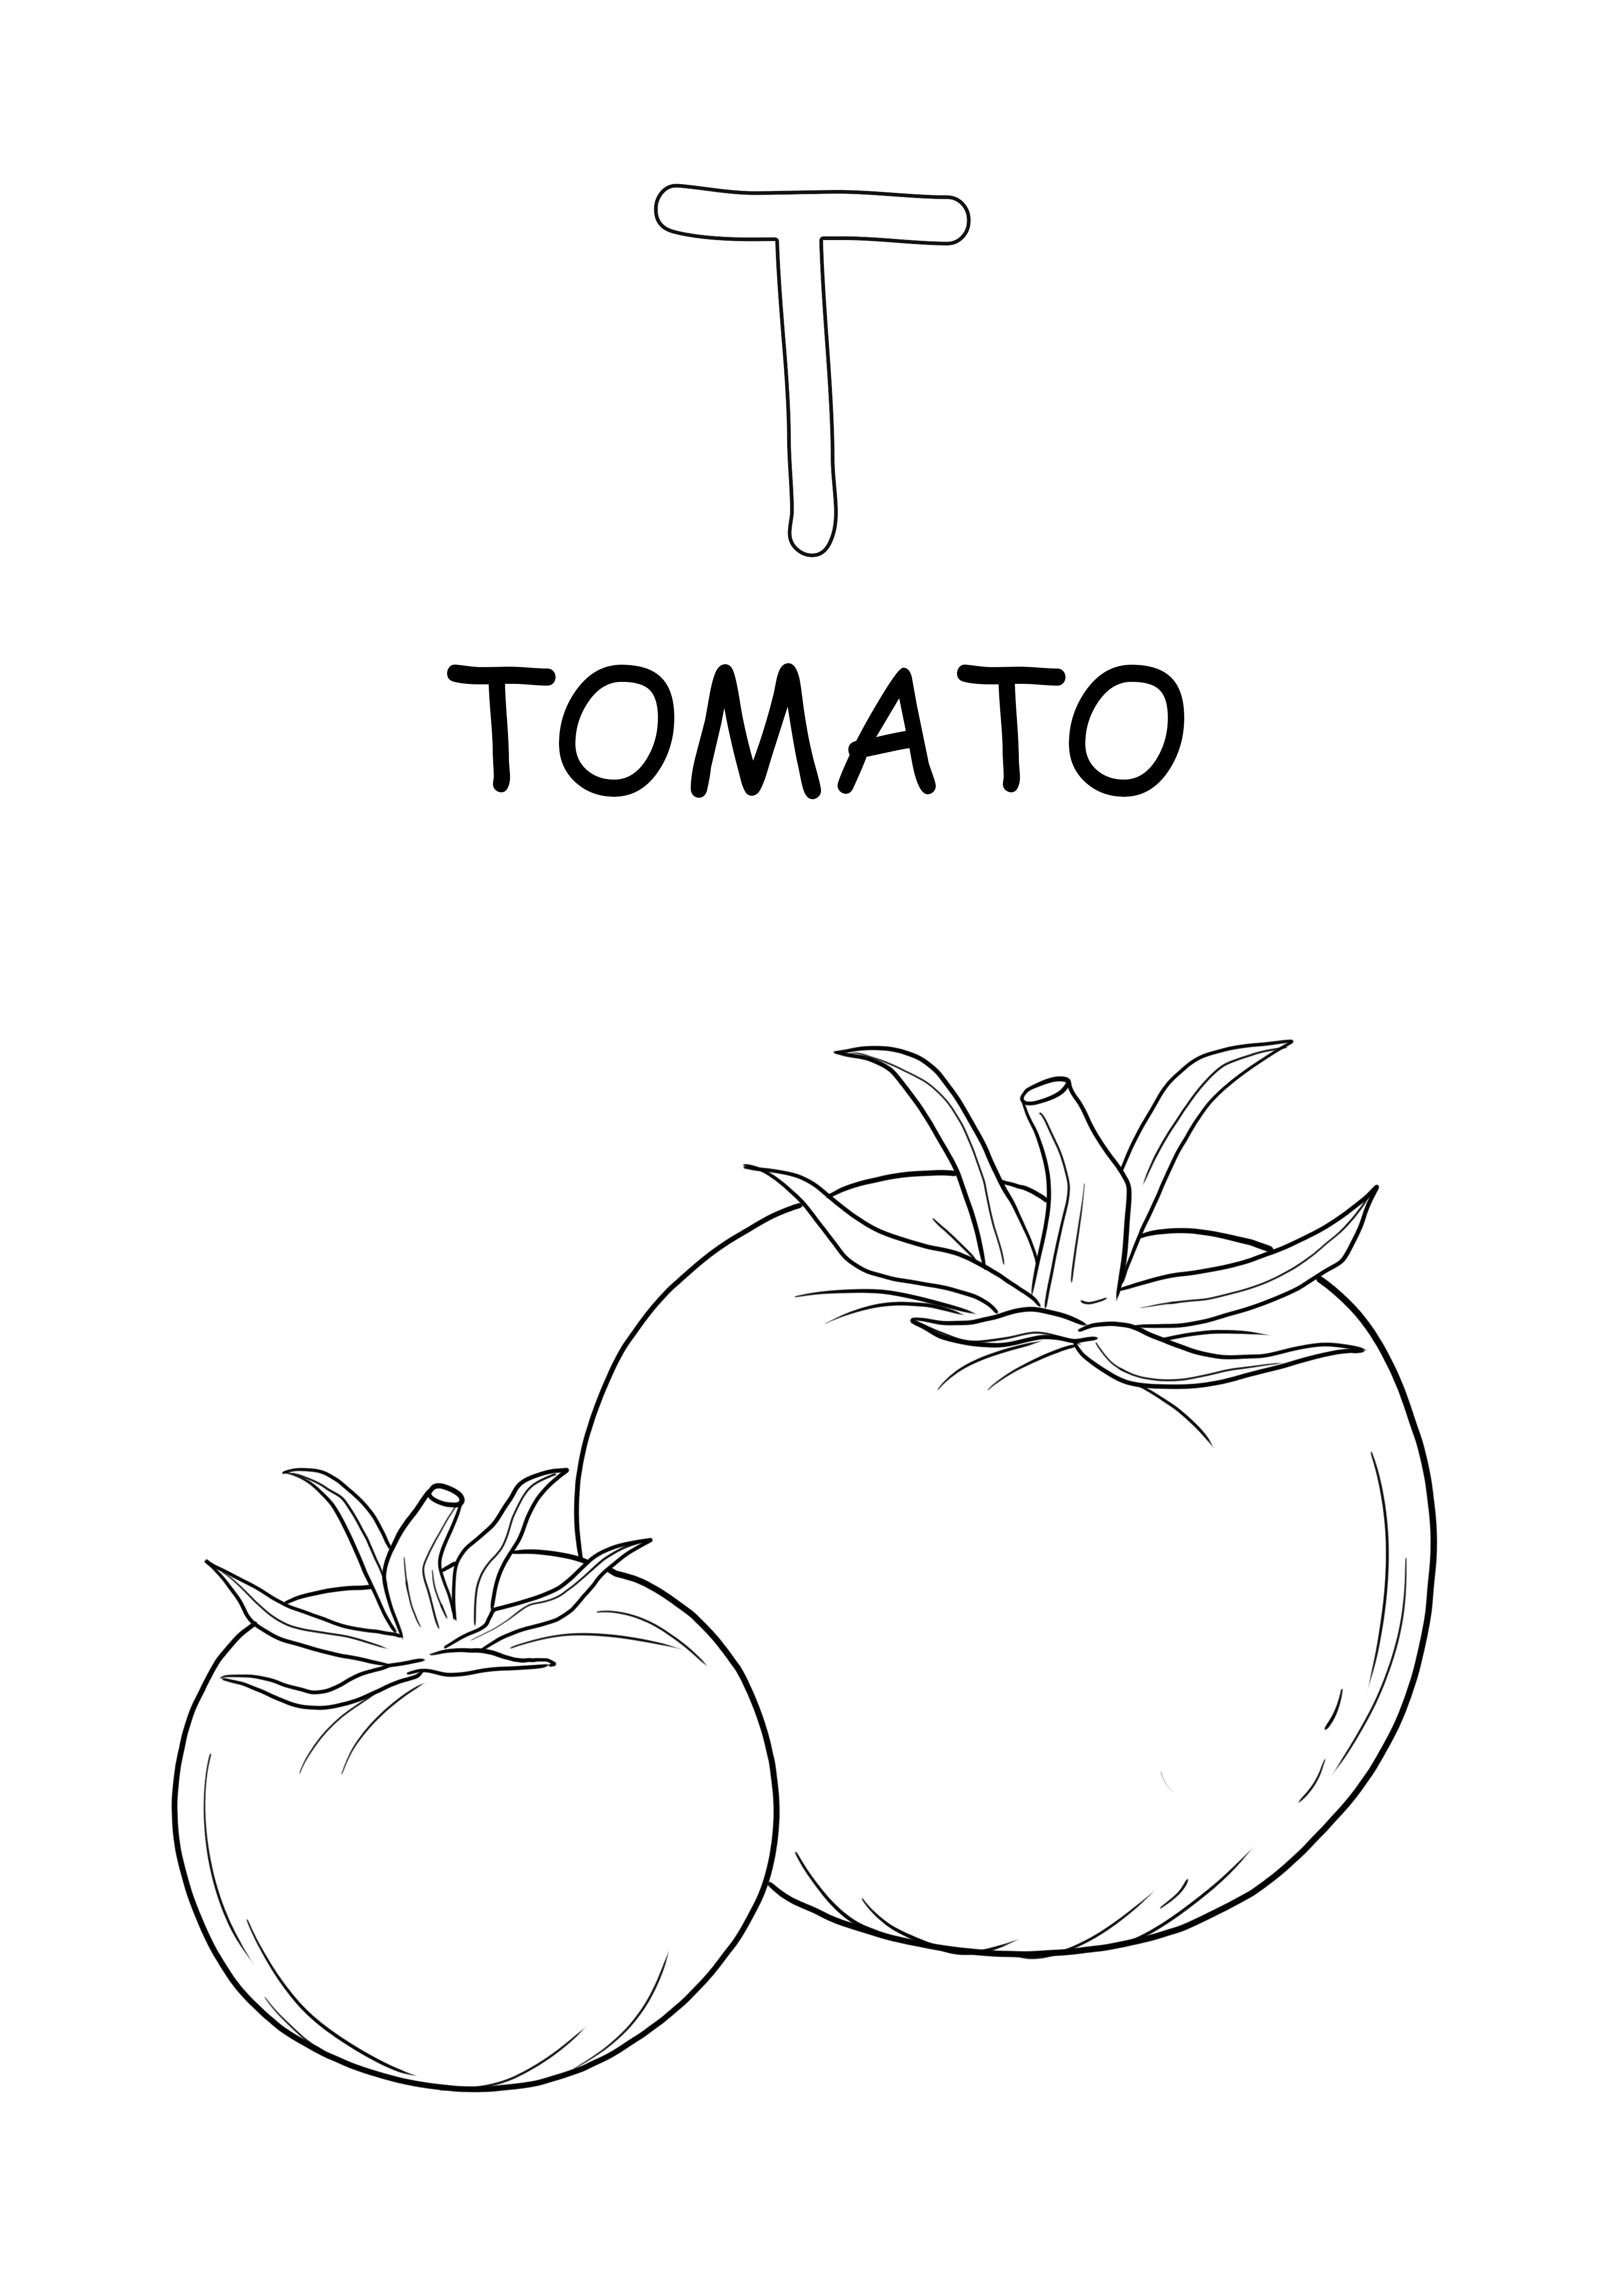 Büyük harfli domates kelimesi ve T harfi ücretsiz indirme ve kolay boyama